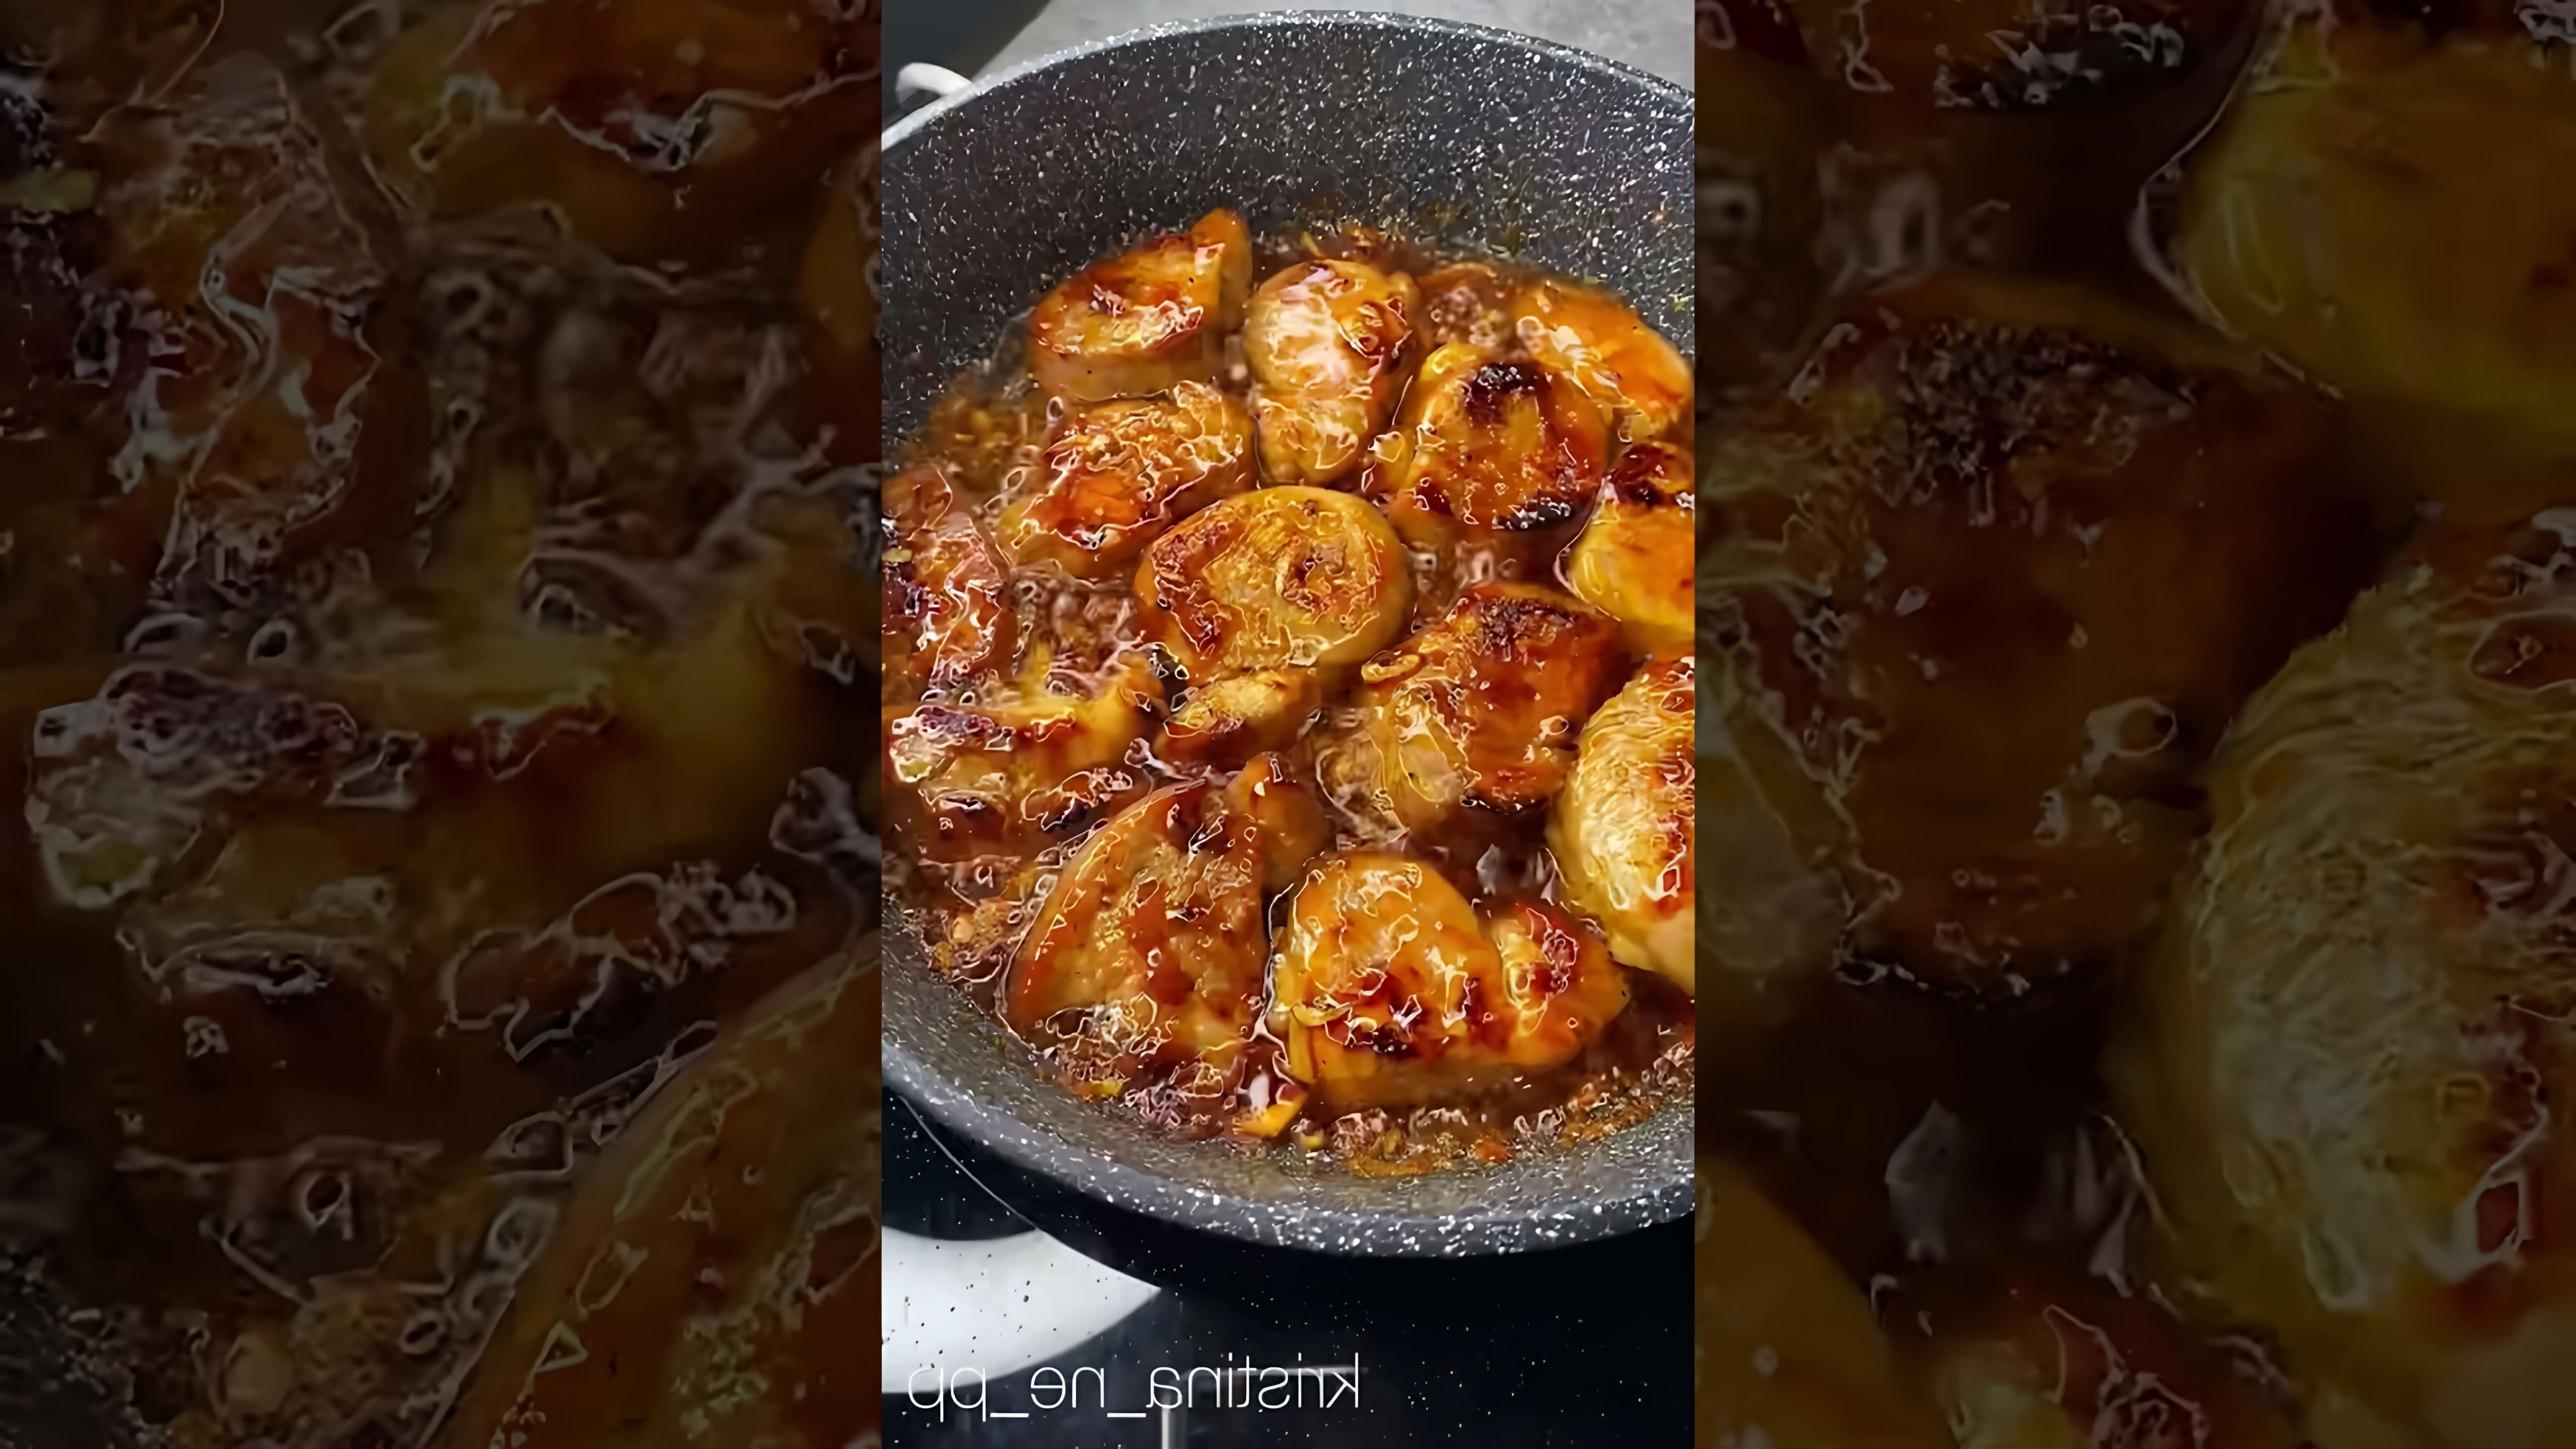 В этом видео демонстрируется рецепт приготовления свинины в медово-чесночном соусе